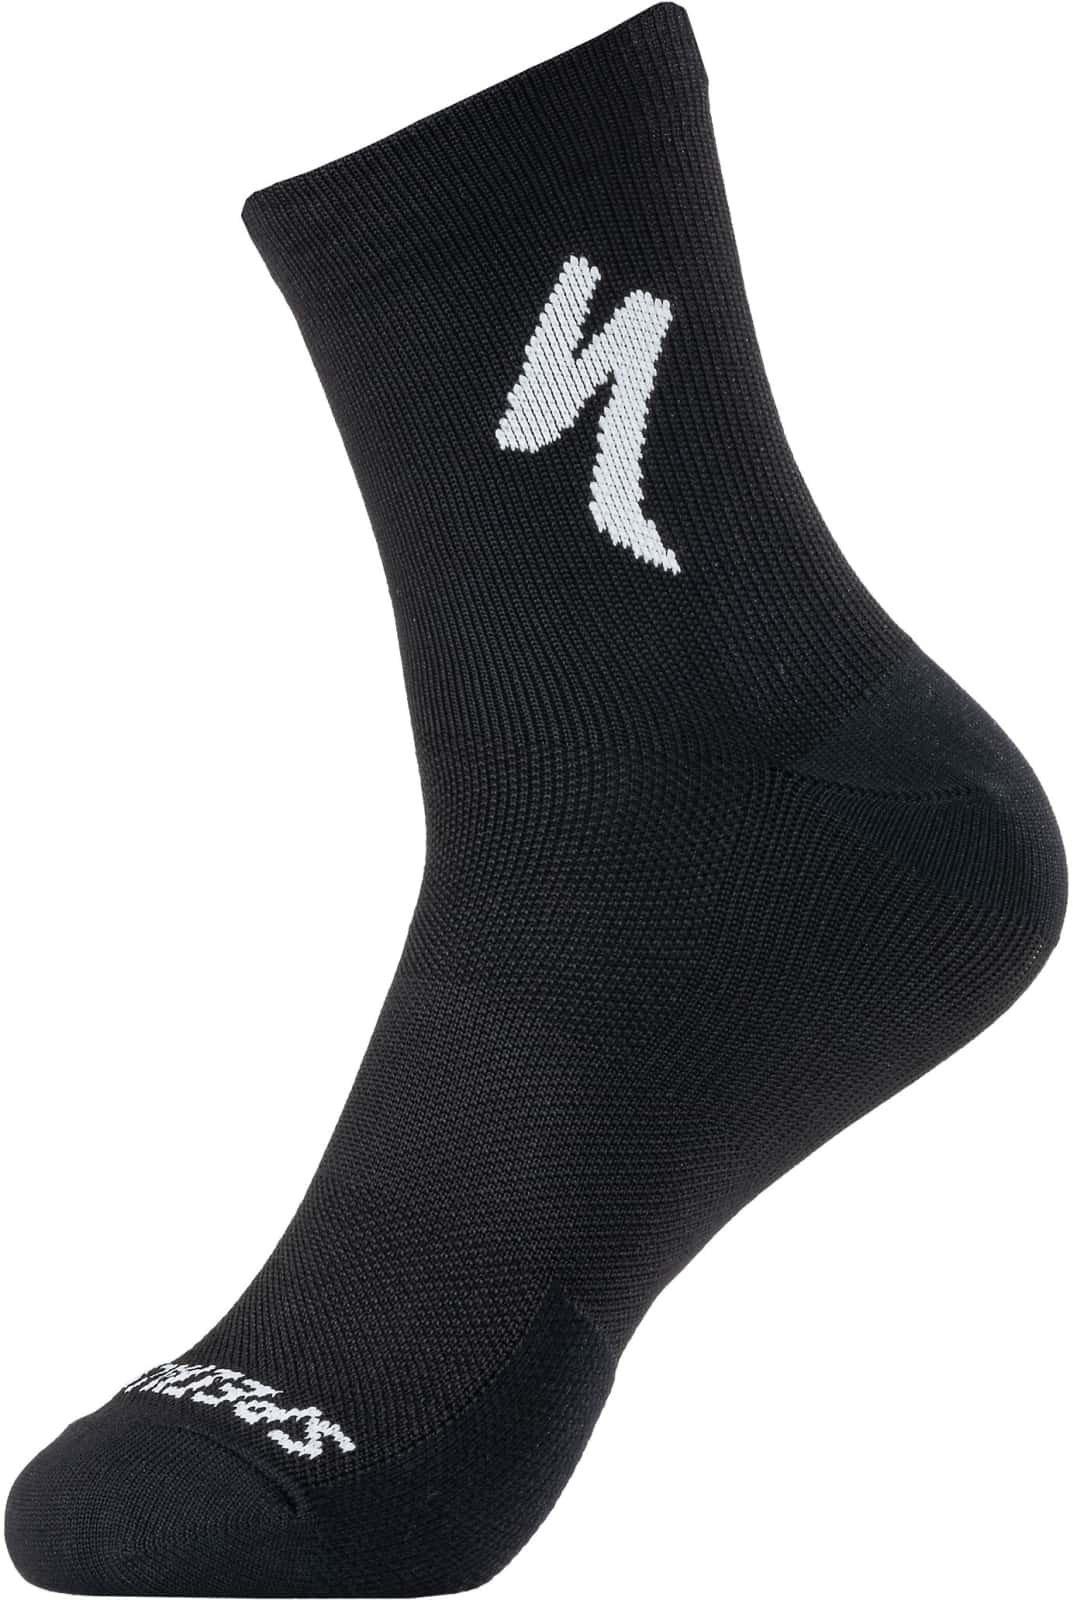 Ponožky Specialized Soft Air Road Mid Sock Veľkosť: M